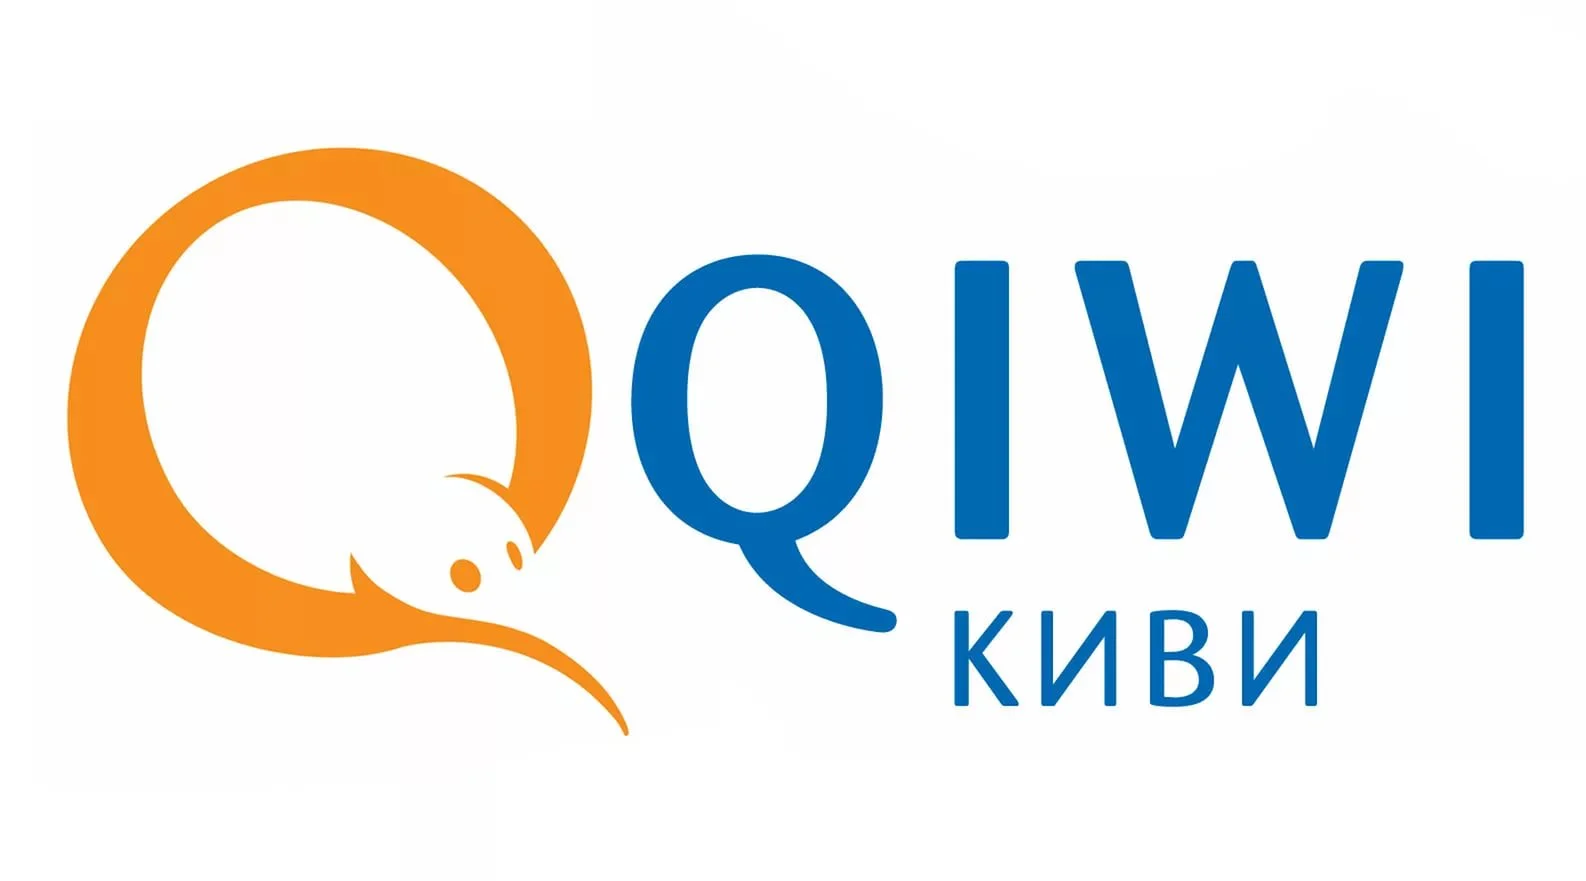 Молния: Qiwi приобрела бренды «Рокетбанк» и «Точка». «Рокетбанк» готовит официальное заявление - фото 1